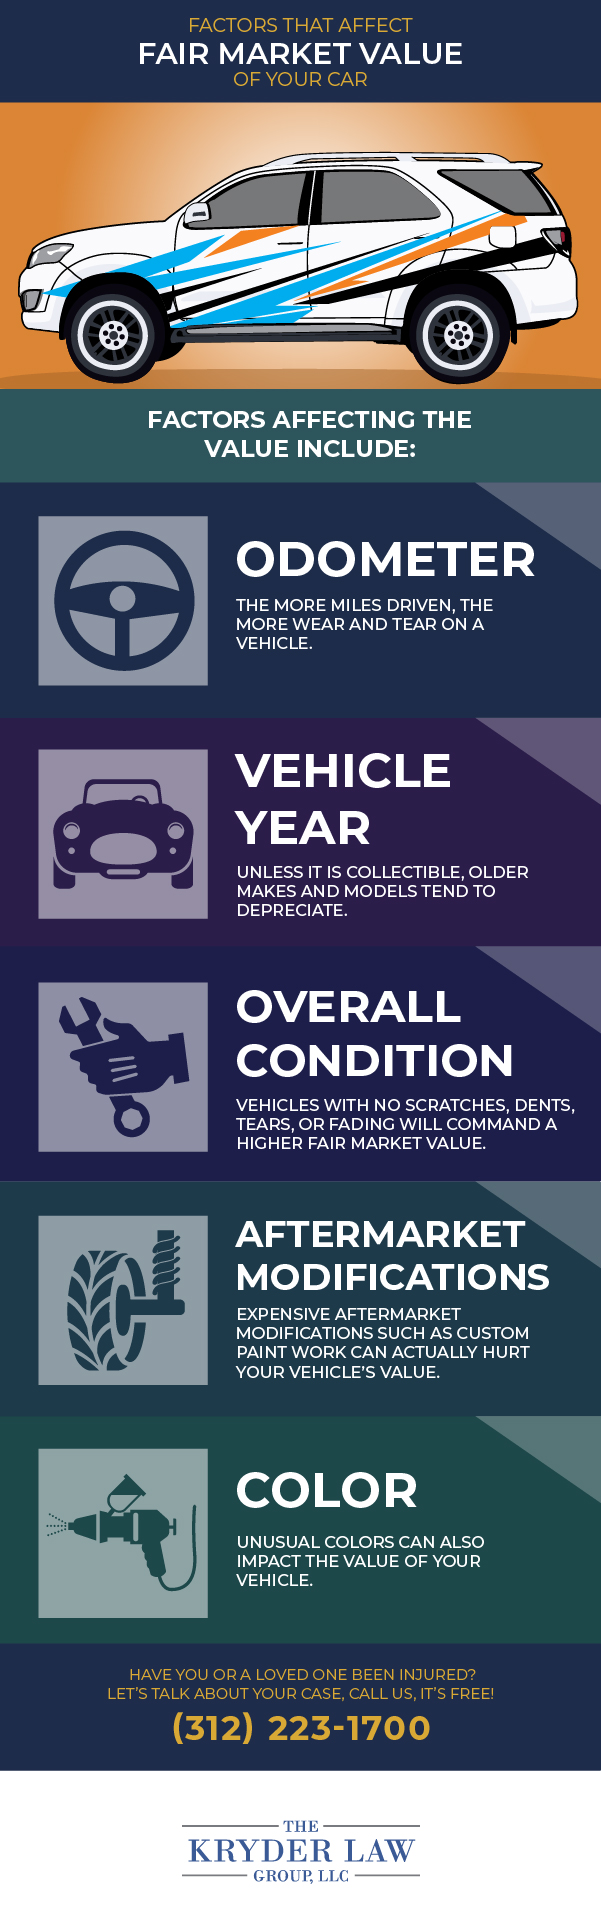 Factors that Affect Fair Market Value of Your Car